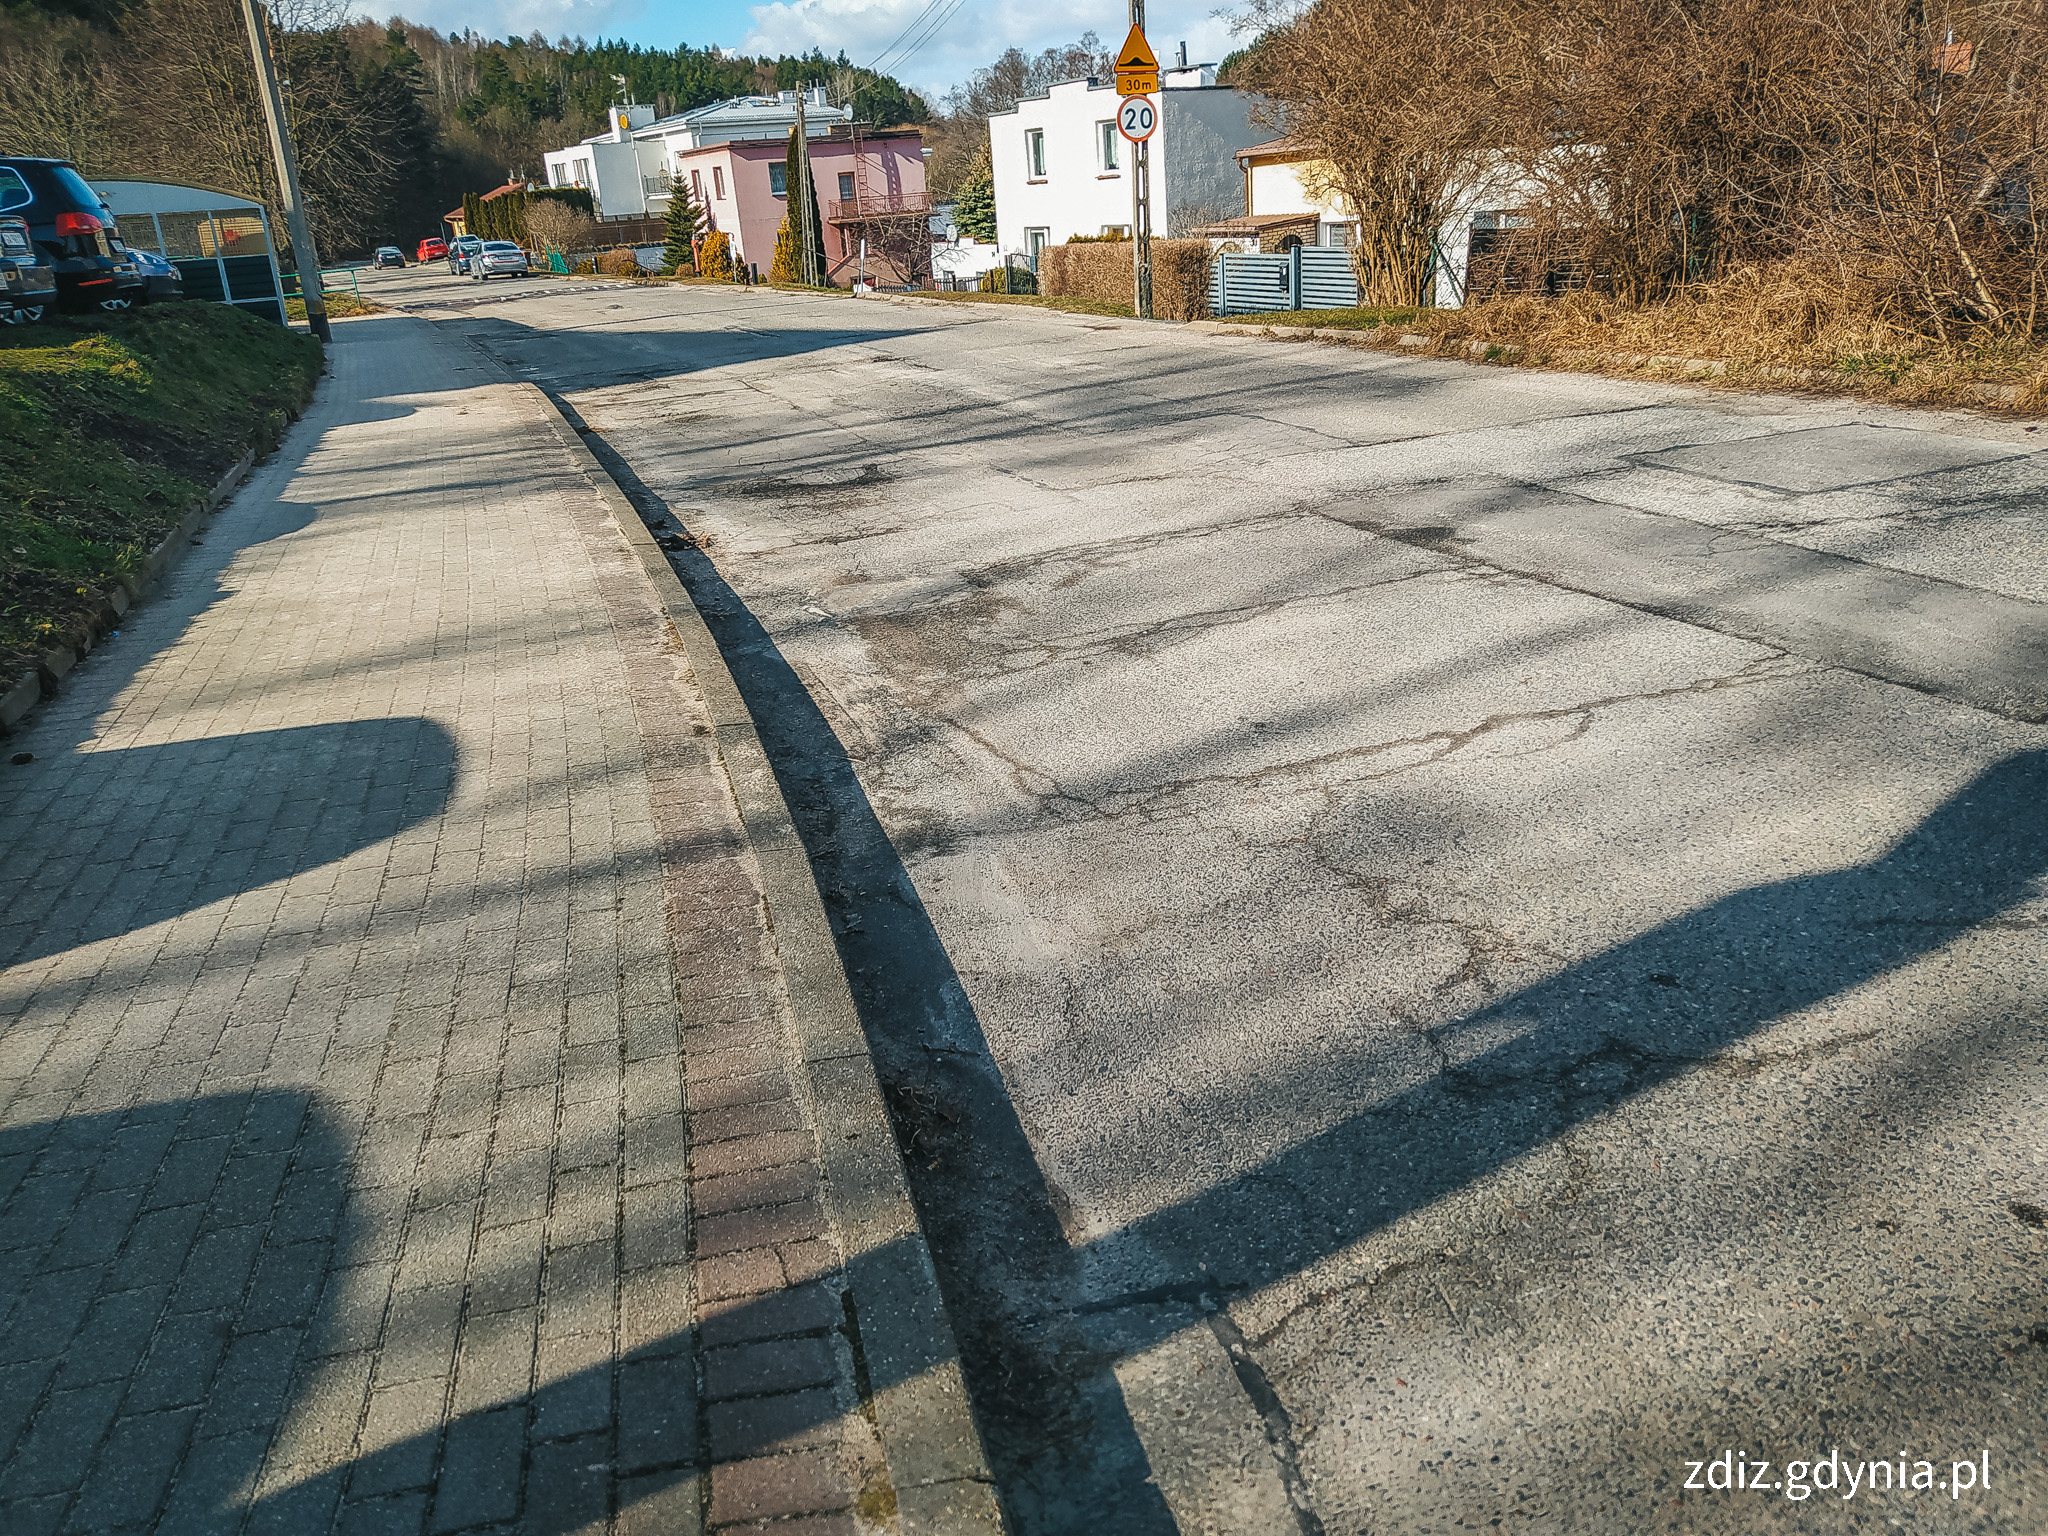 widoczny chodnik oraz ulica, słoneczny dzień, w tle widoczne osiedle